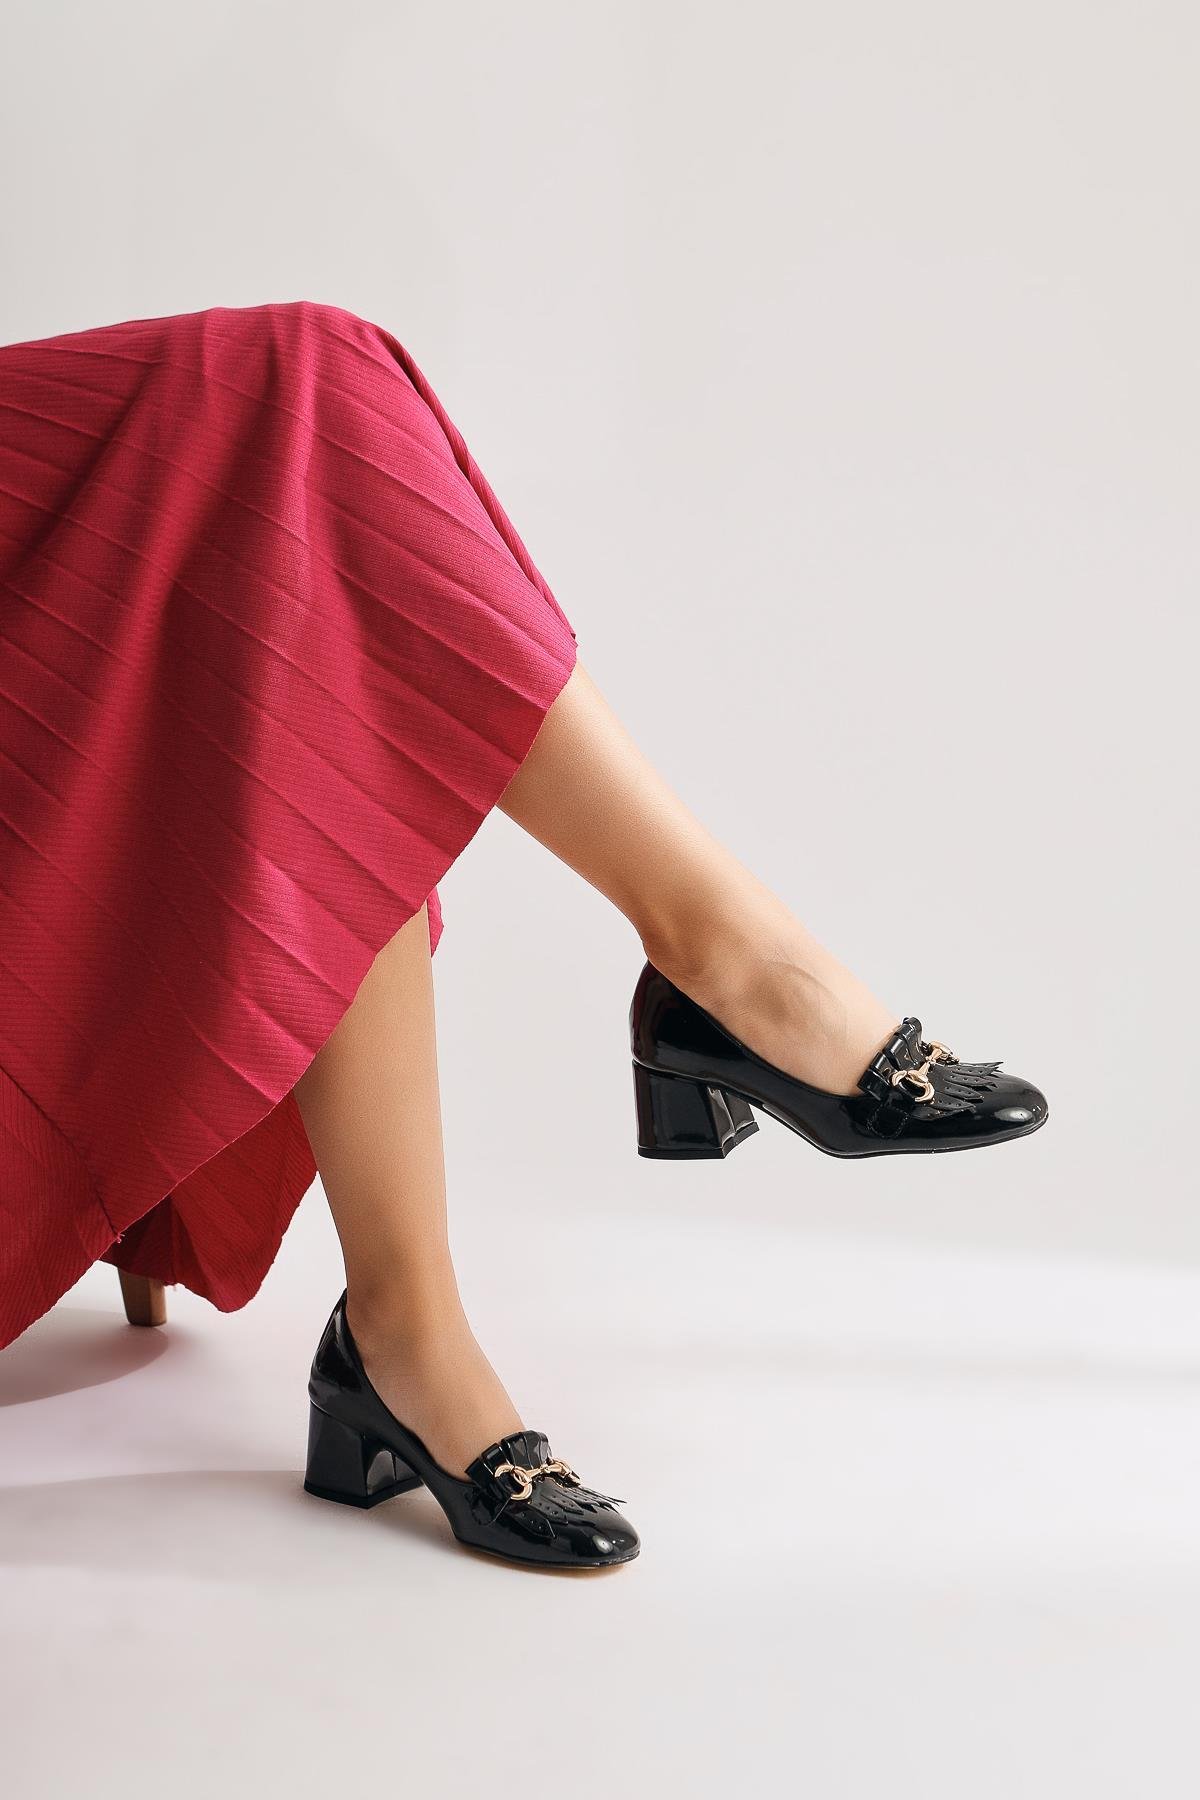 Anne-Caroline Siyah Rugan Toka Detaylı Kısa Topuklu Ayakkabı | Limoya.com  ile Modayı Keşfet!